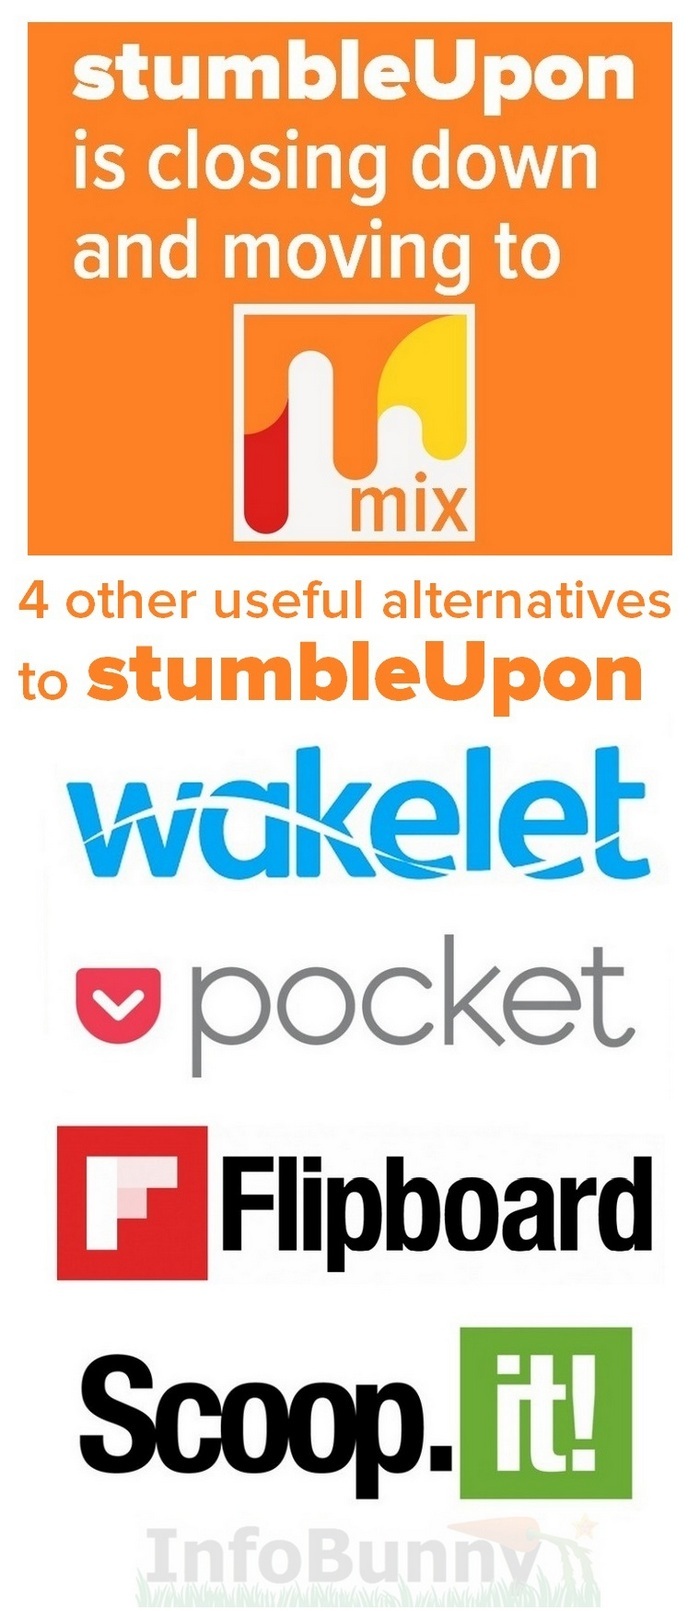 StumbleUpon is closing down - 5 alternatives to stumbleupon